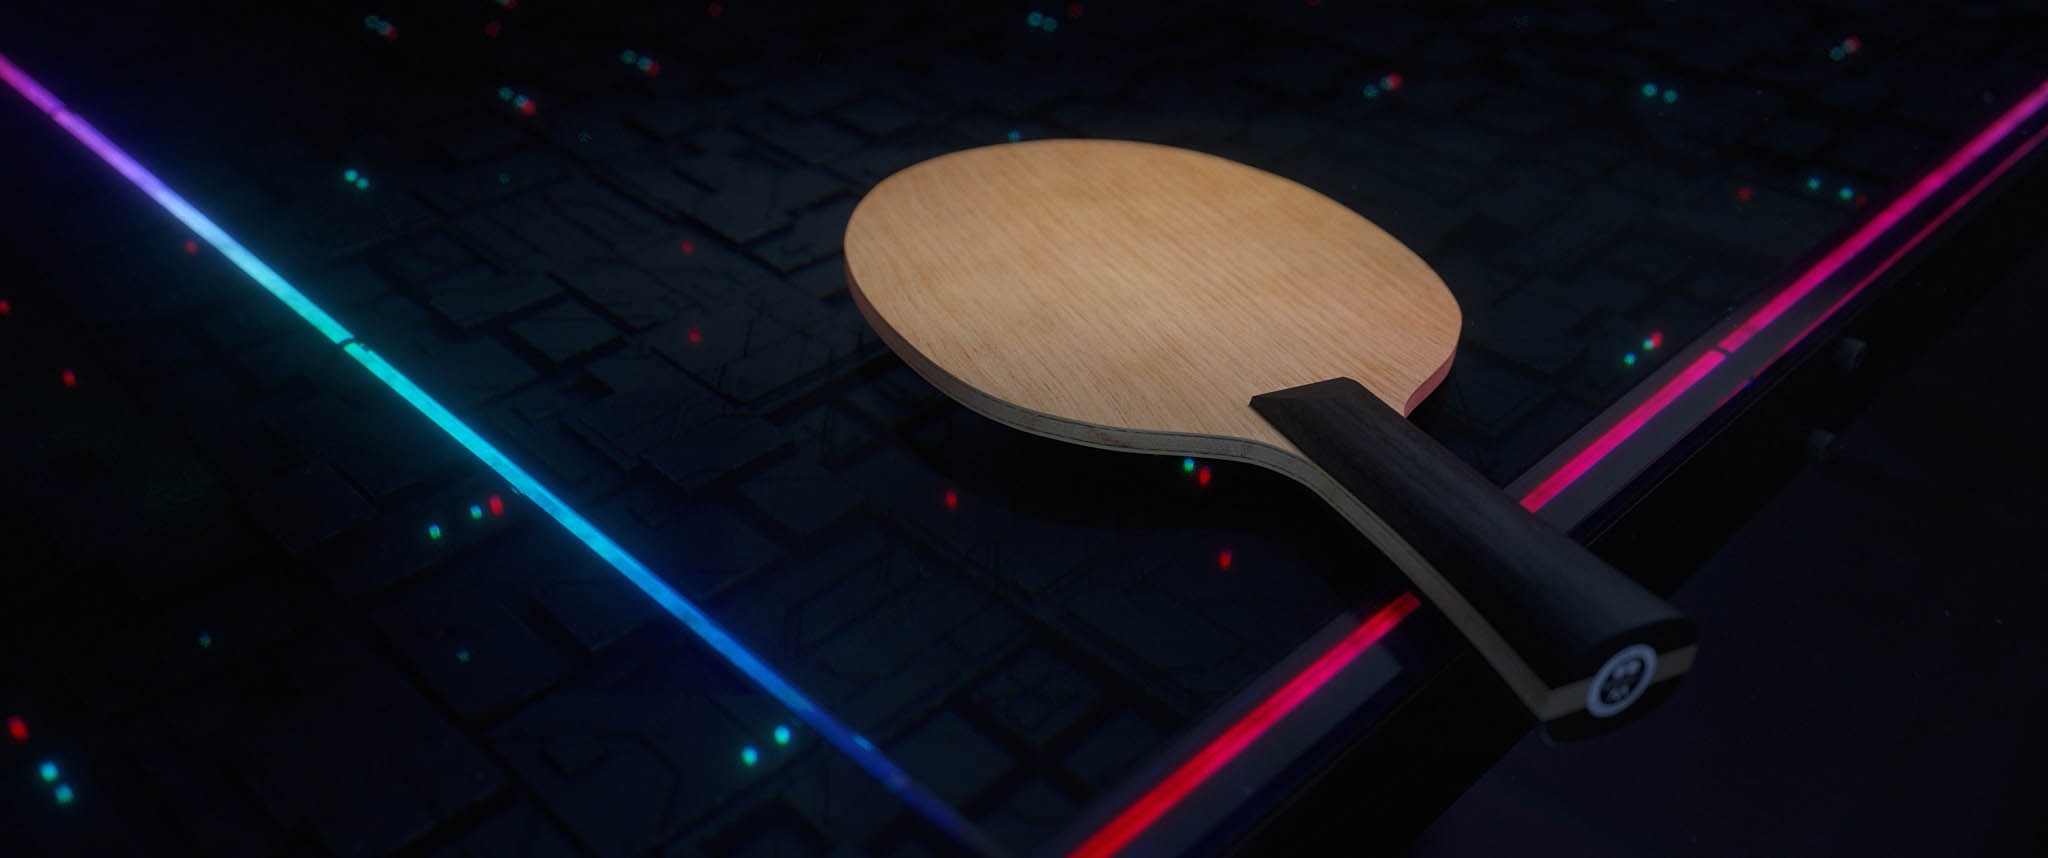 Futuristic stiga table with plain racket